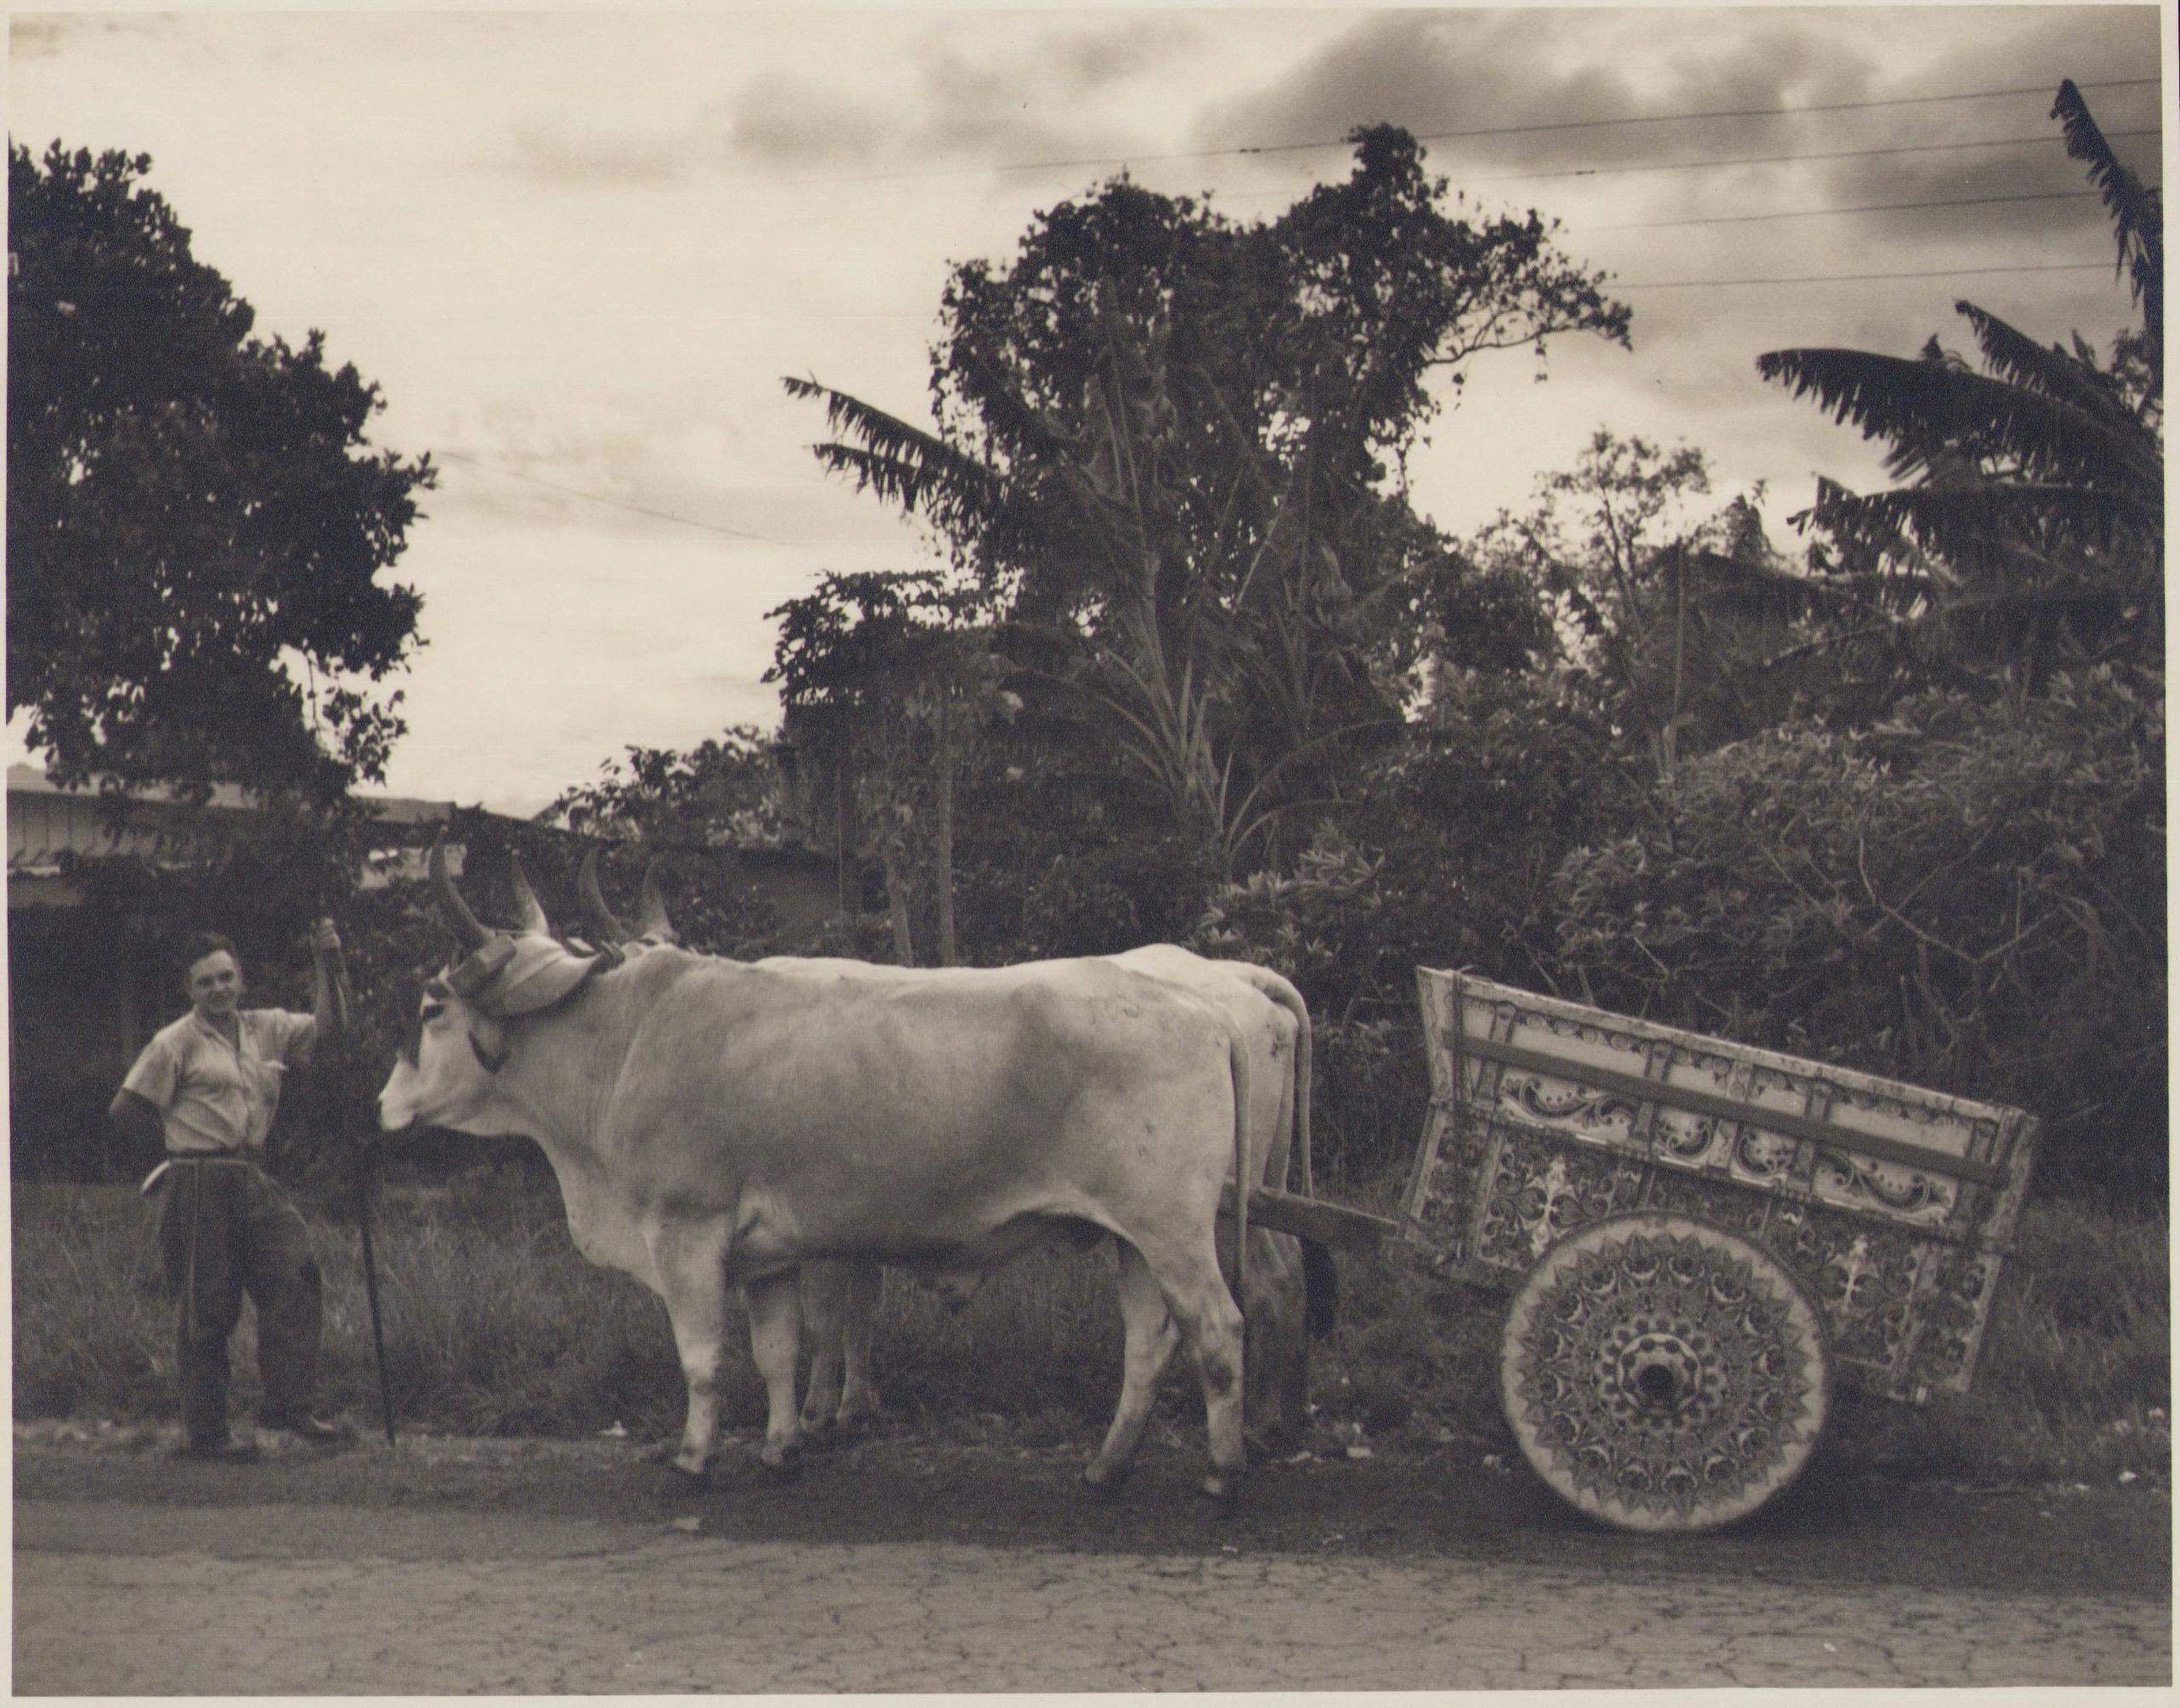 Portrait Photograph Hanna Seidel - Costa Rica, Encadrement, Vache, Photographie en noir et blanc, années 1960, 17,2 x 21,9 cm